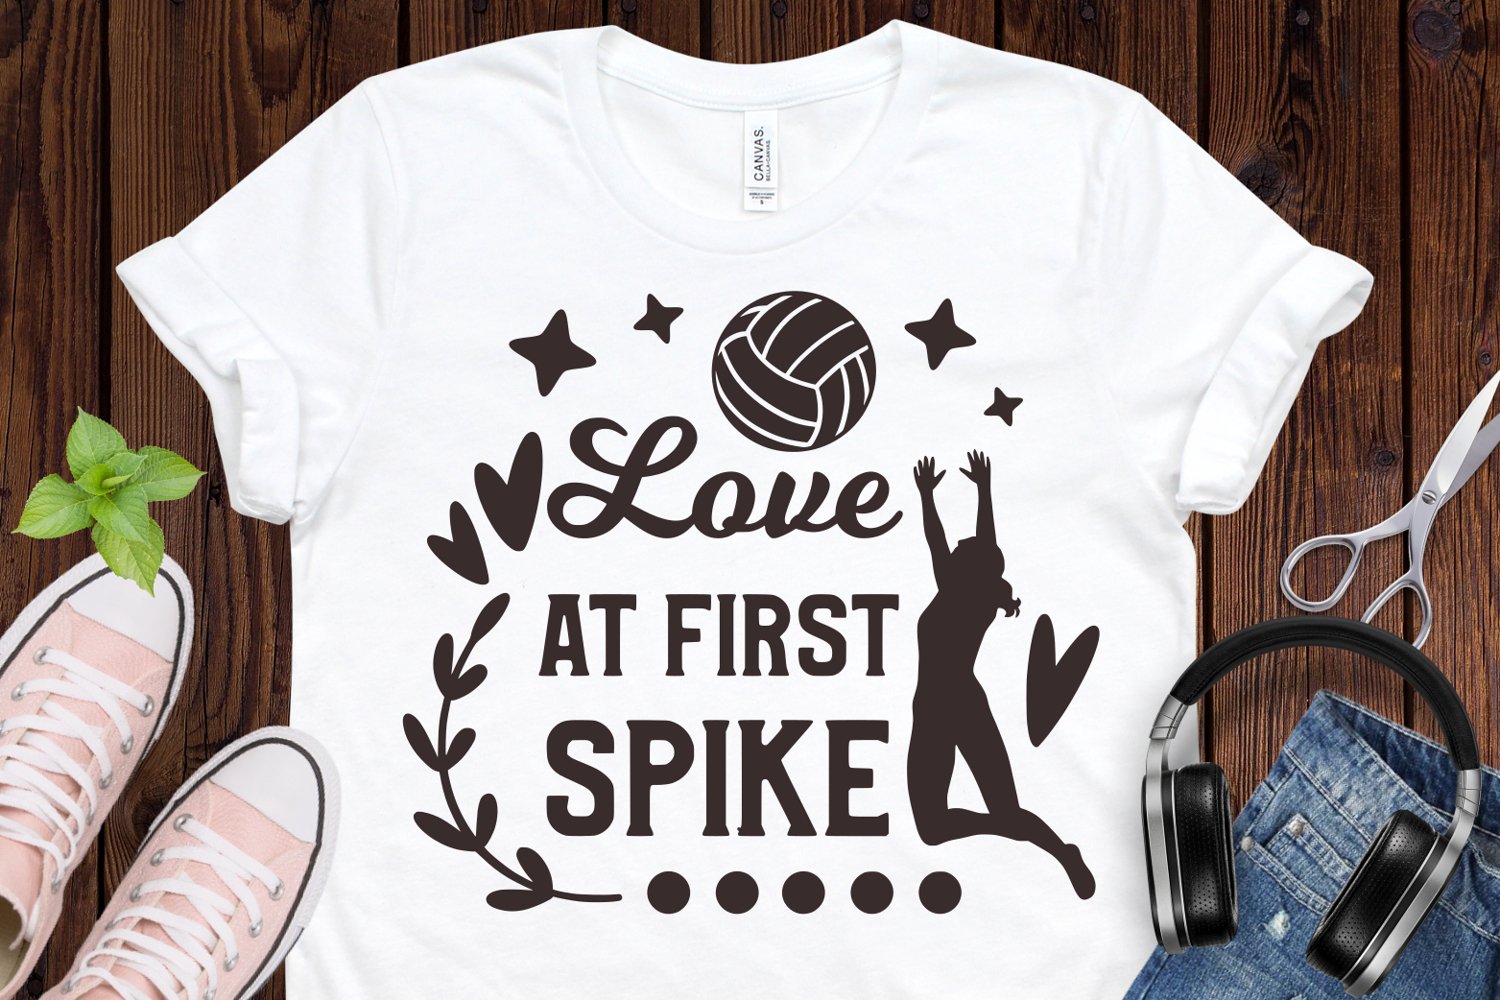 Love at first spike - t-shirt design.